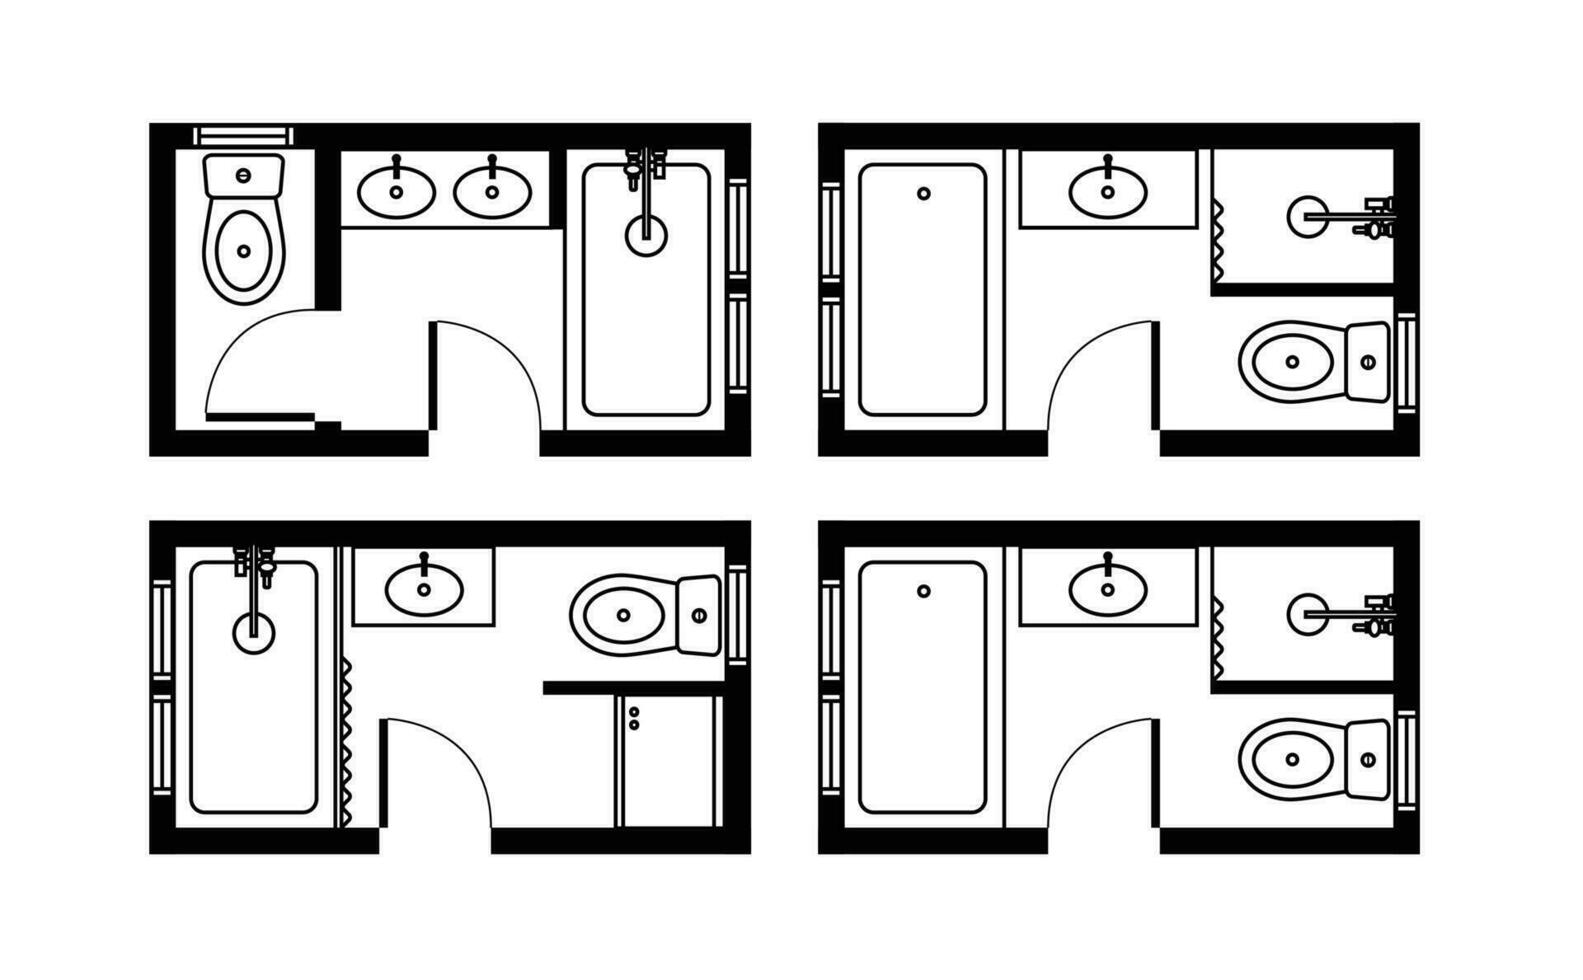 architektonisch Pläne zum Badezimmer, Studios und Häuser. Innere Fußboden planen und Design Elemente zum Toilette, Waschbecken, Badewanne und Dusche vektor